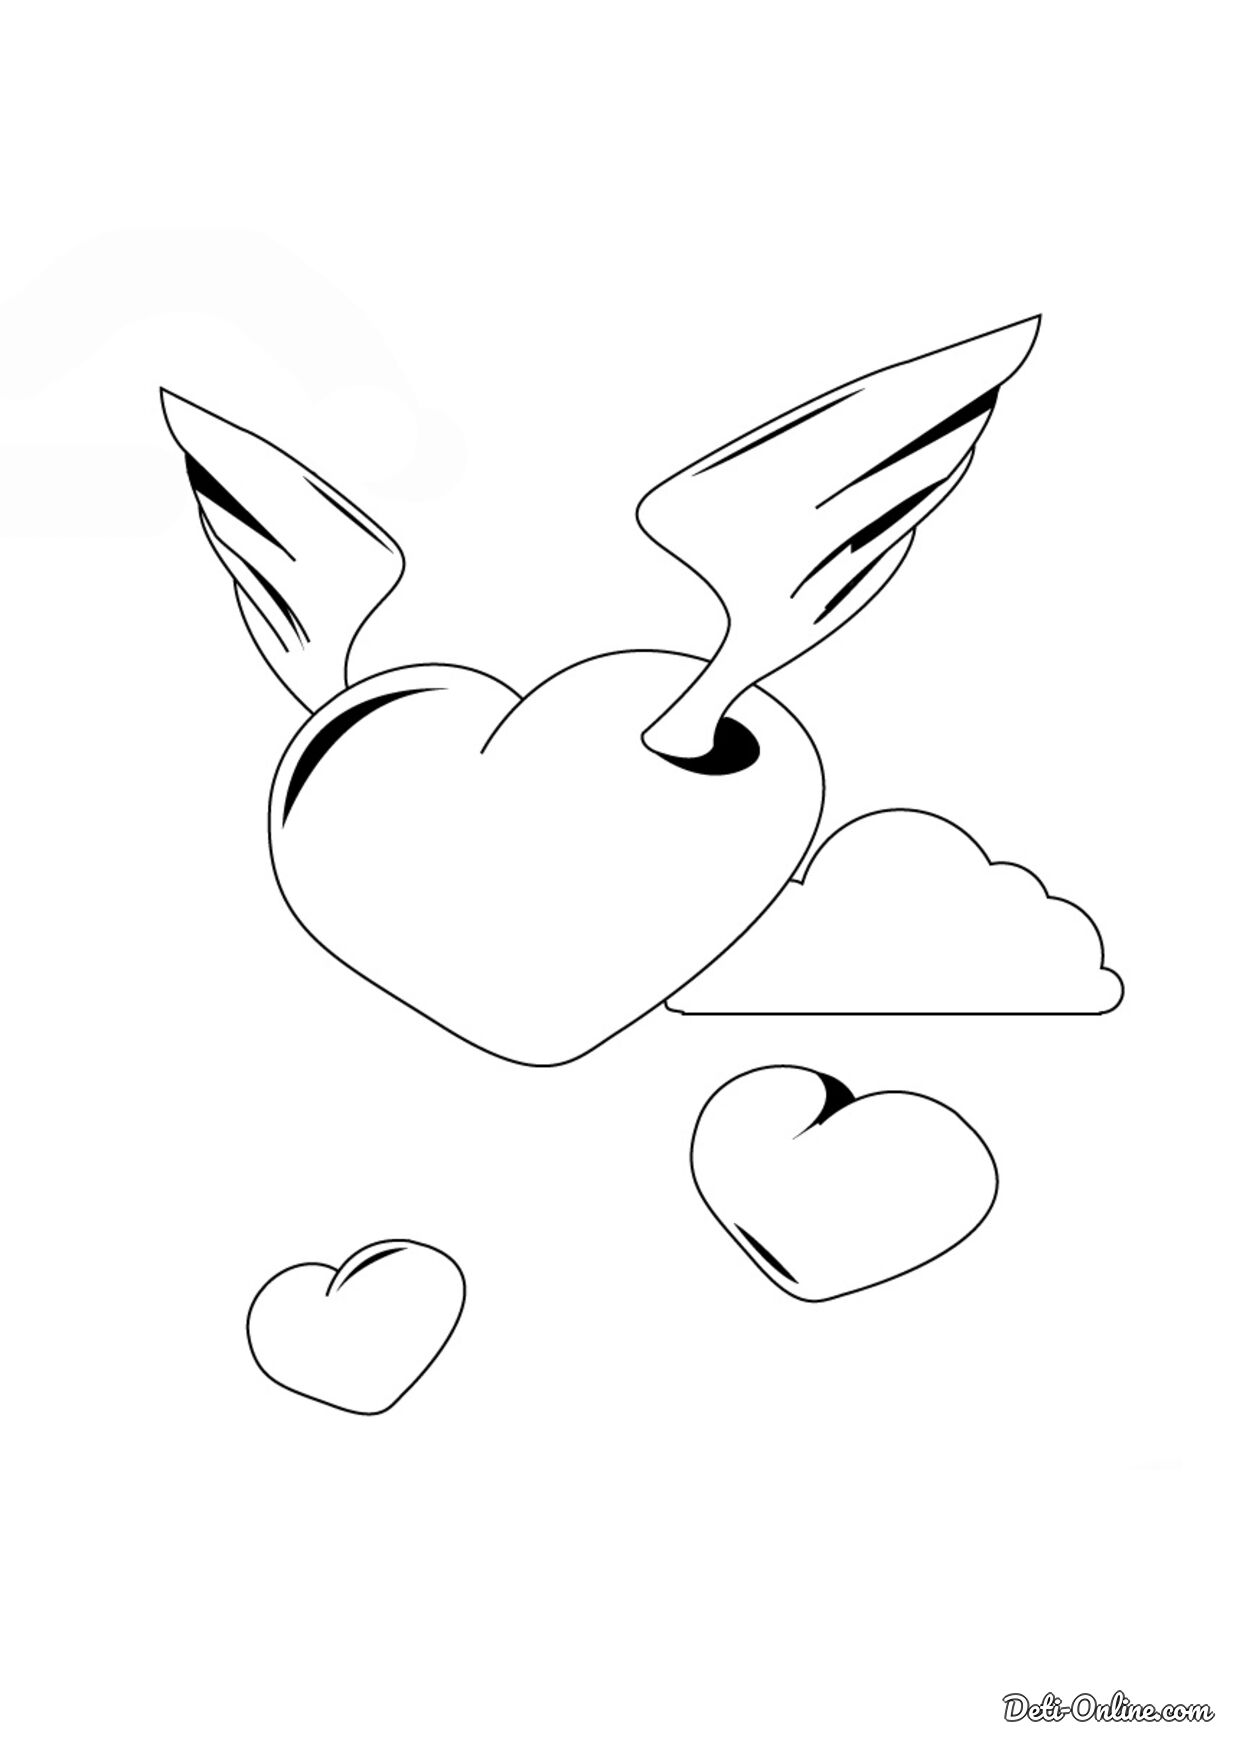 Раскраска Сердечко-ангелочек и маленькие сердечки распечатать или скачать